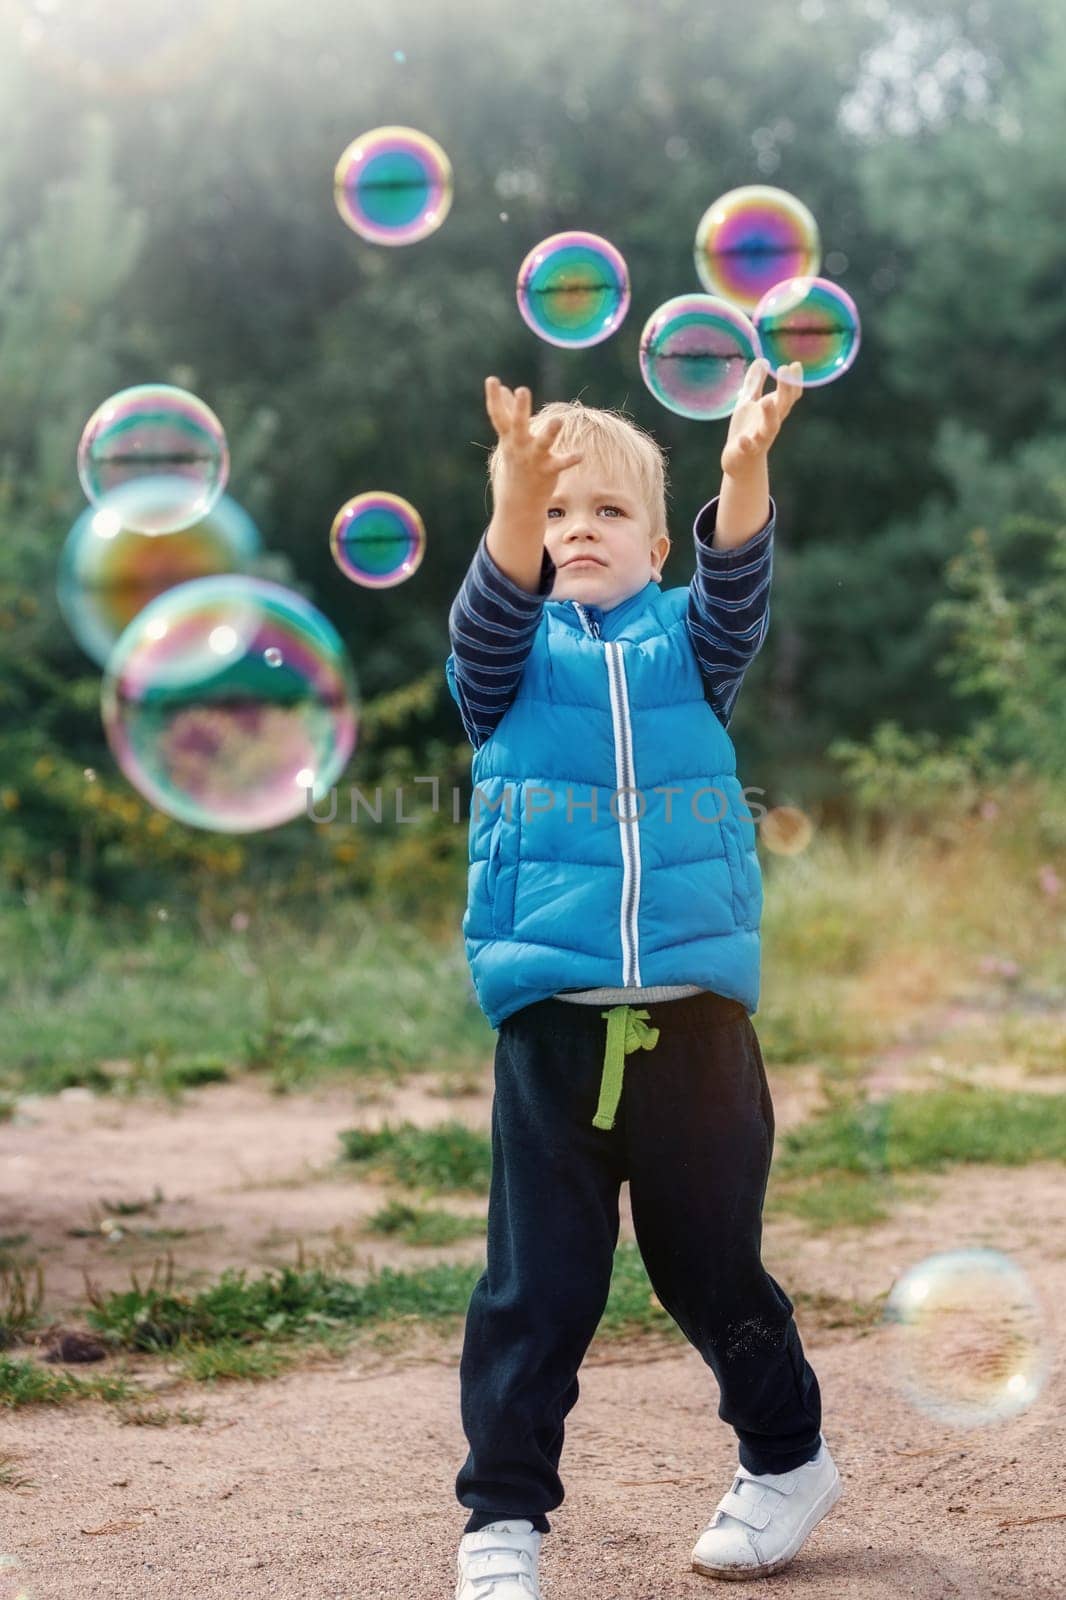 The little boy catches soap bubbles in autumn nature. by Lincikas